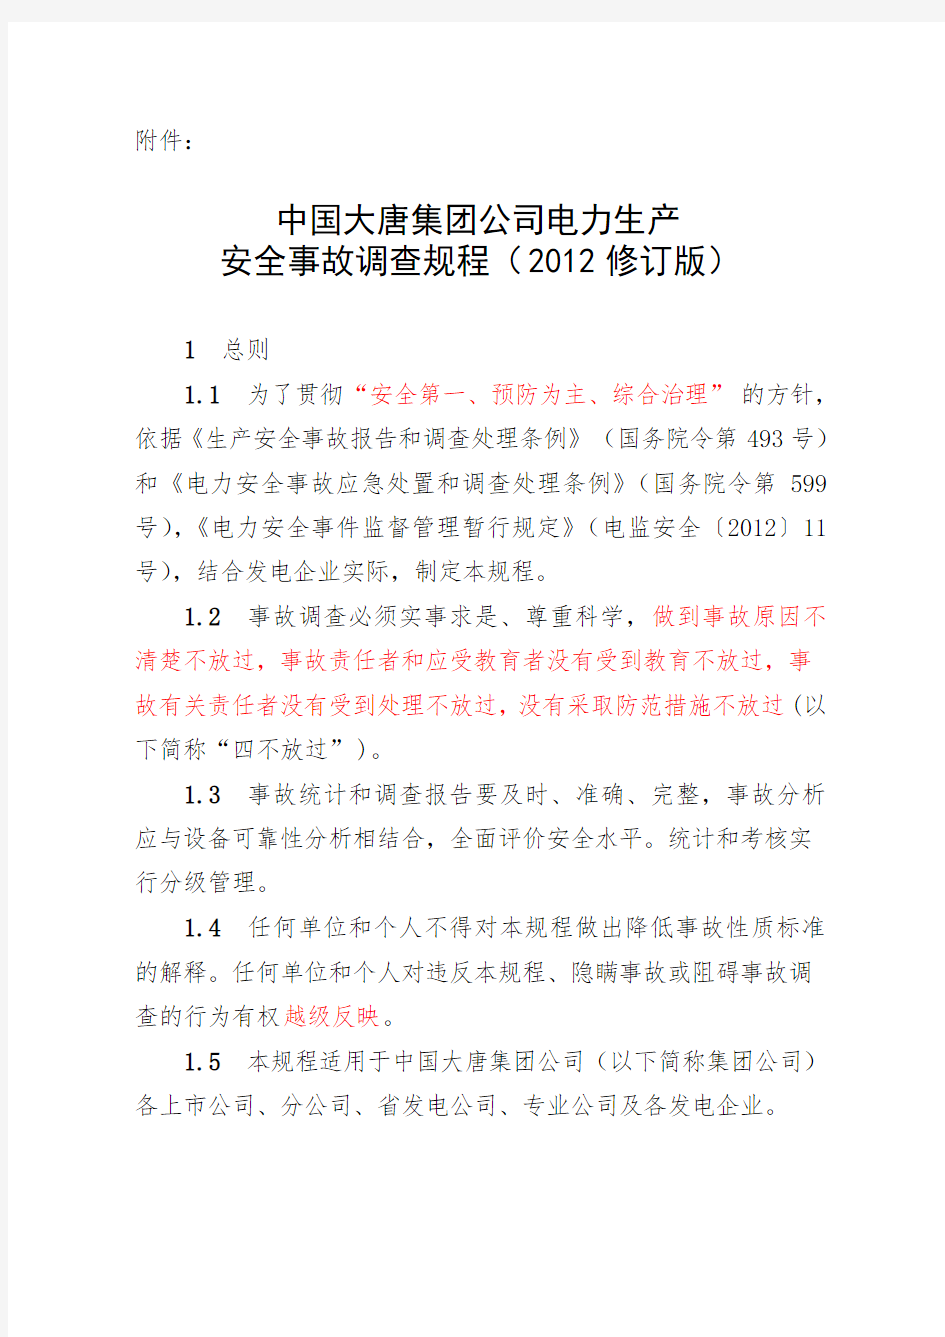 中国大唐集团公司电力生产安全事故调查规程(2012版)